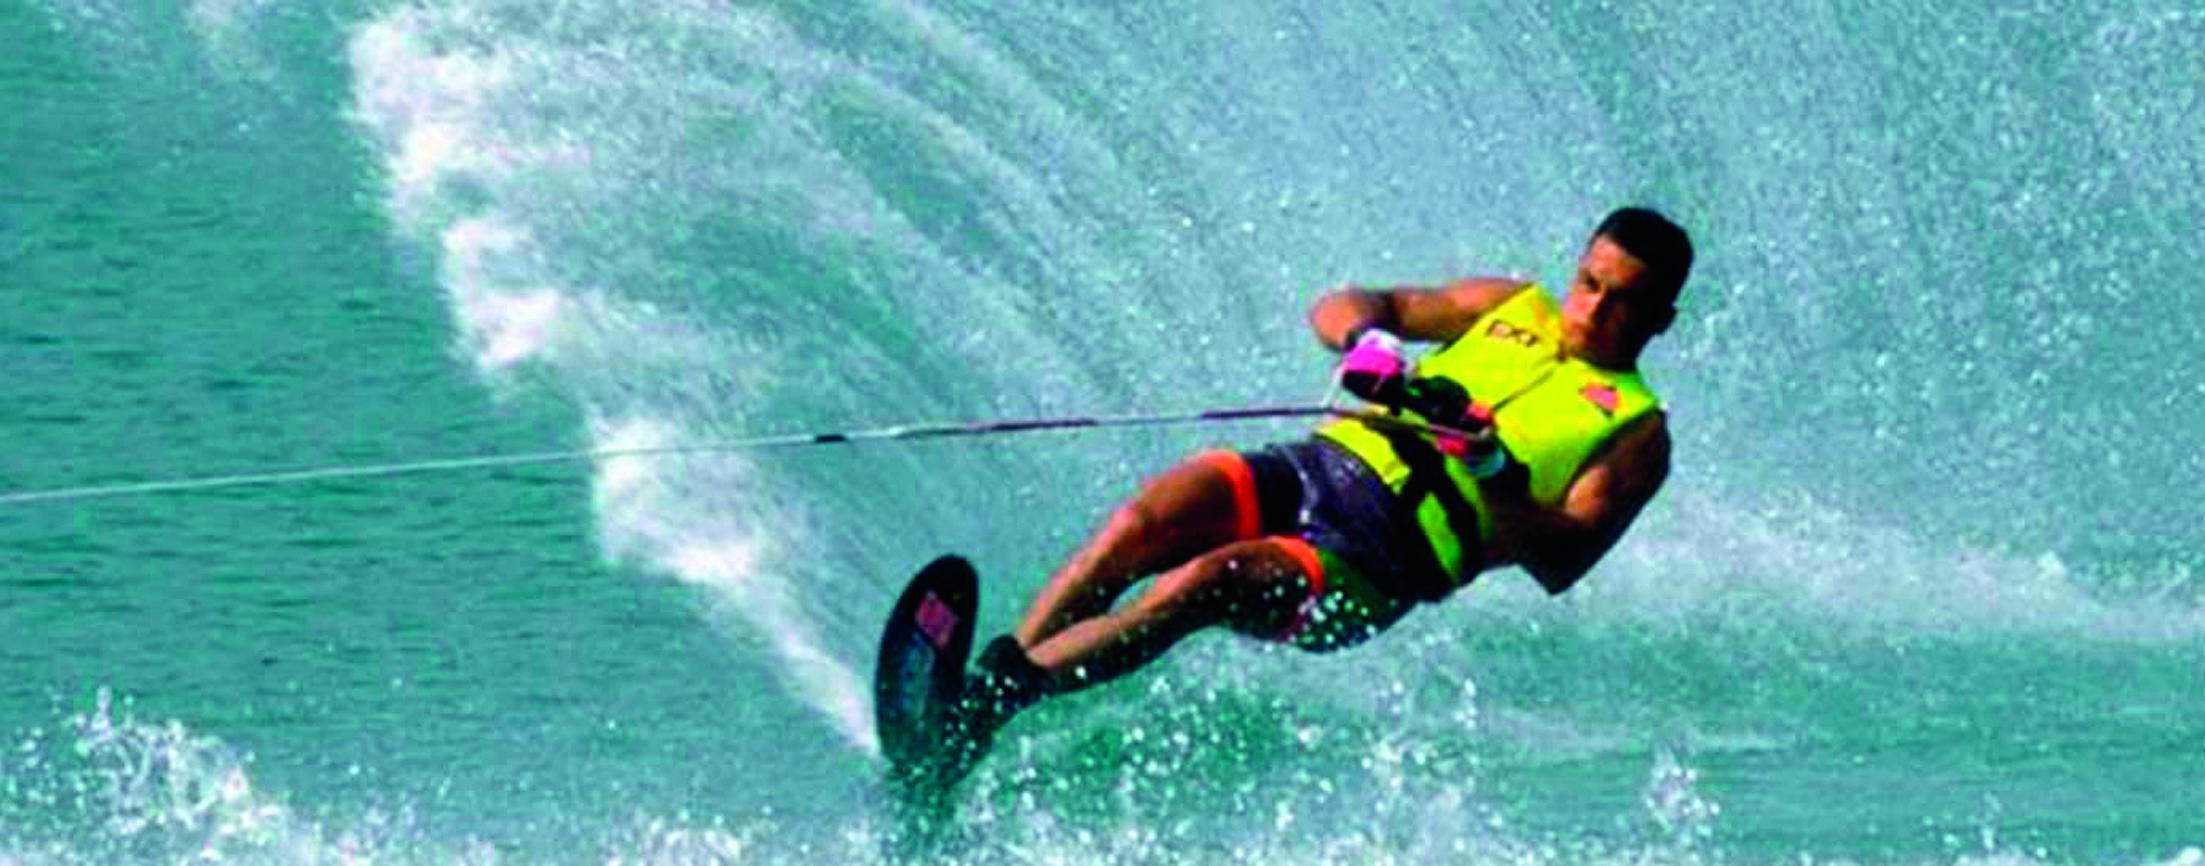 wake board e sci nautico water sport giulia andrea